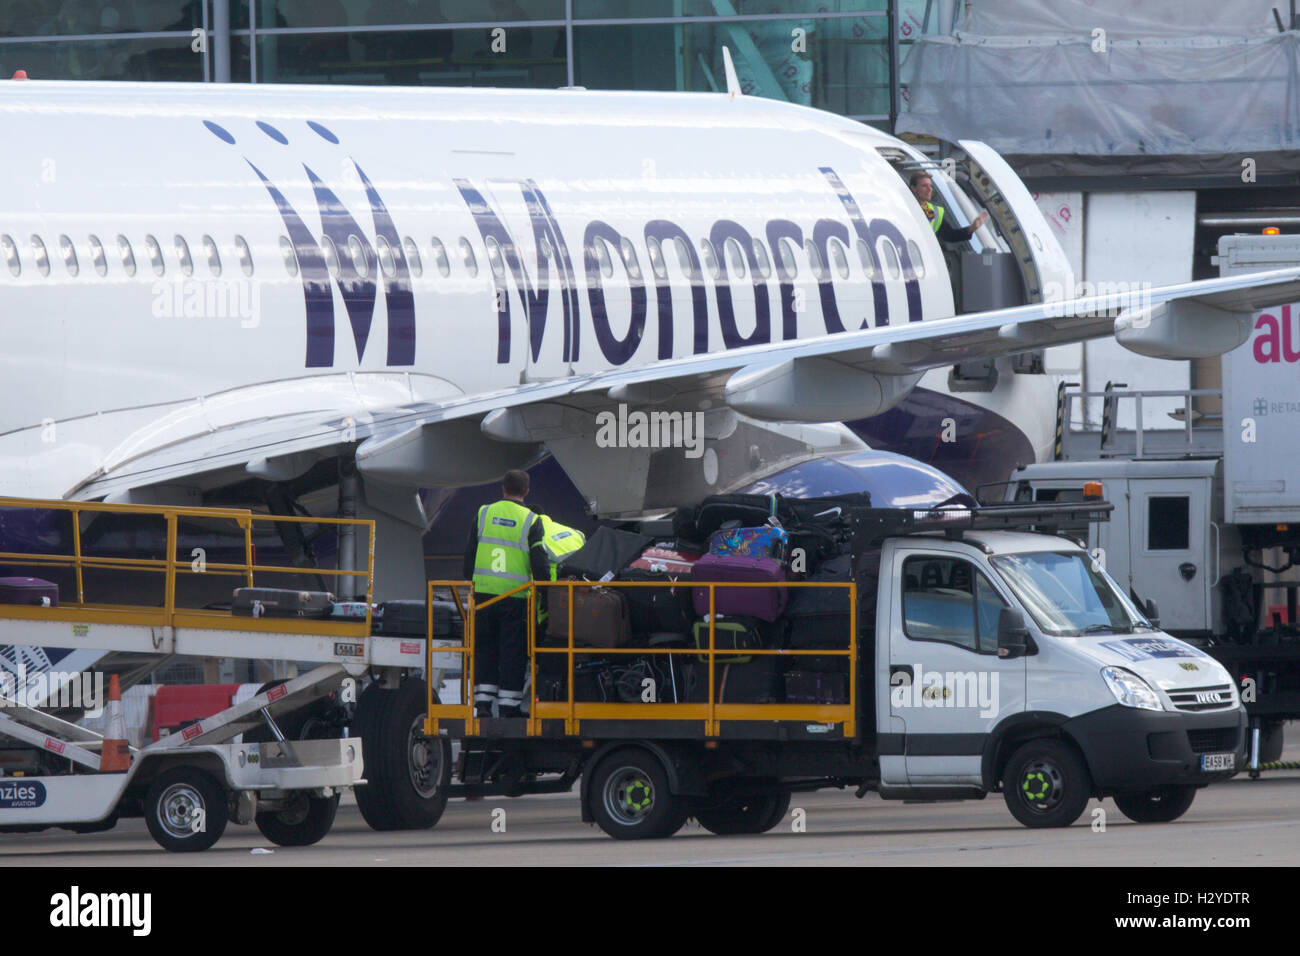 Monarch Airlines avion à l'aéroport de Luton, le vendredi après-midi, 30 sept. Banque D'Images